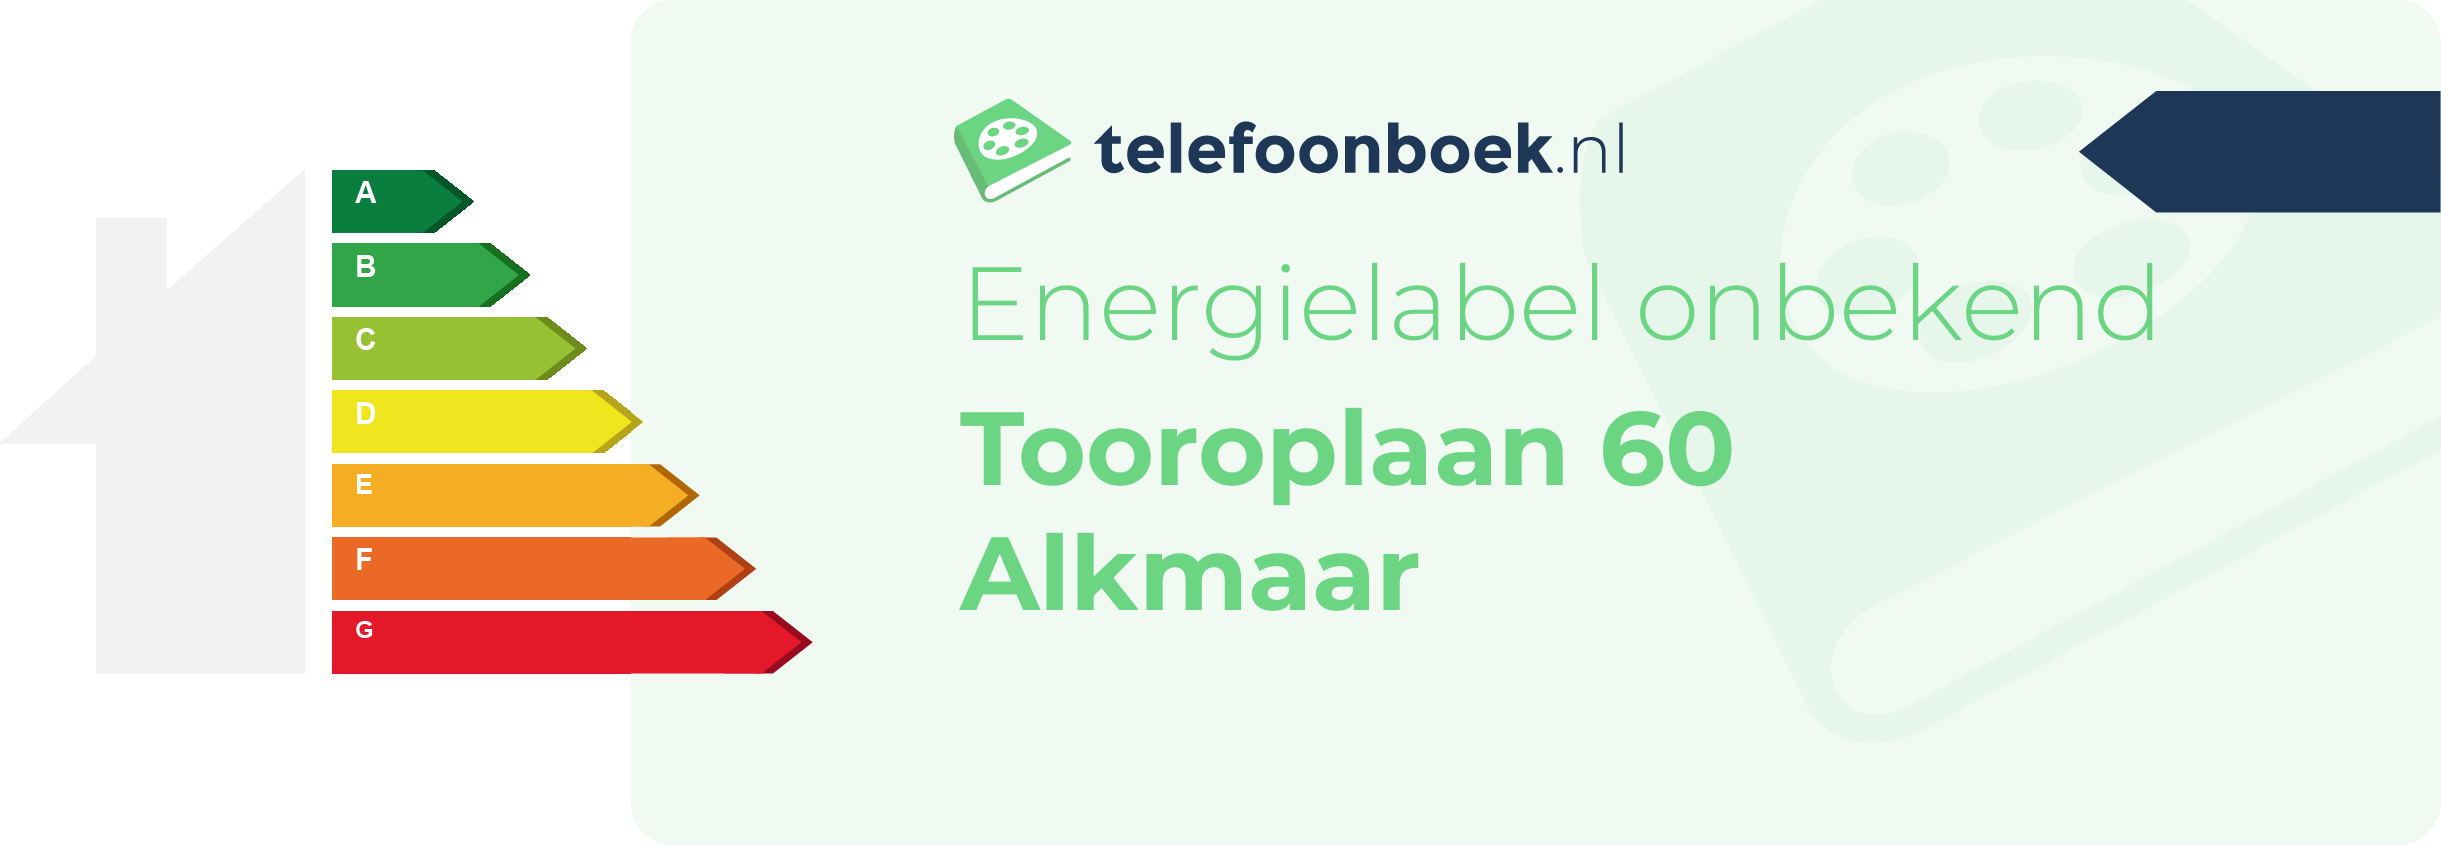 Energielabel Tooroplaan 60 Alkmaar